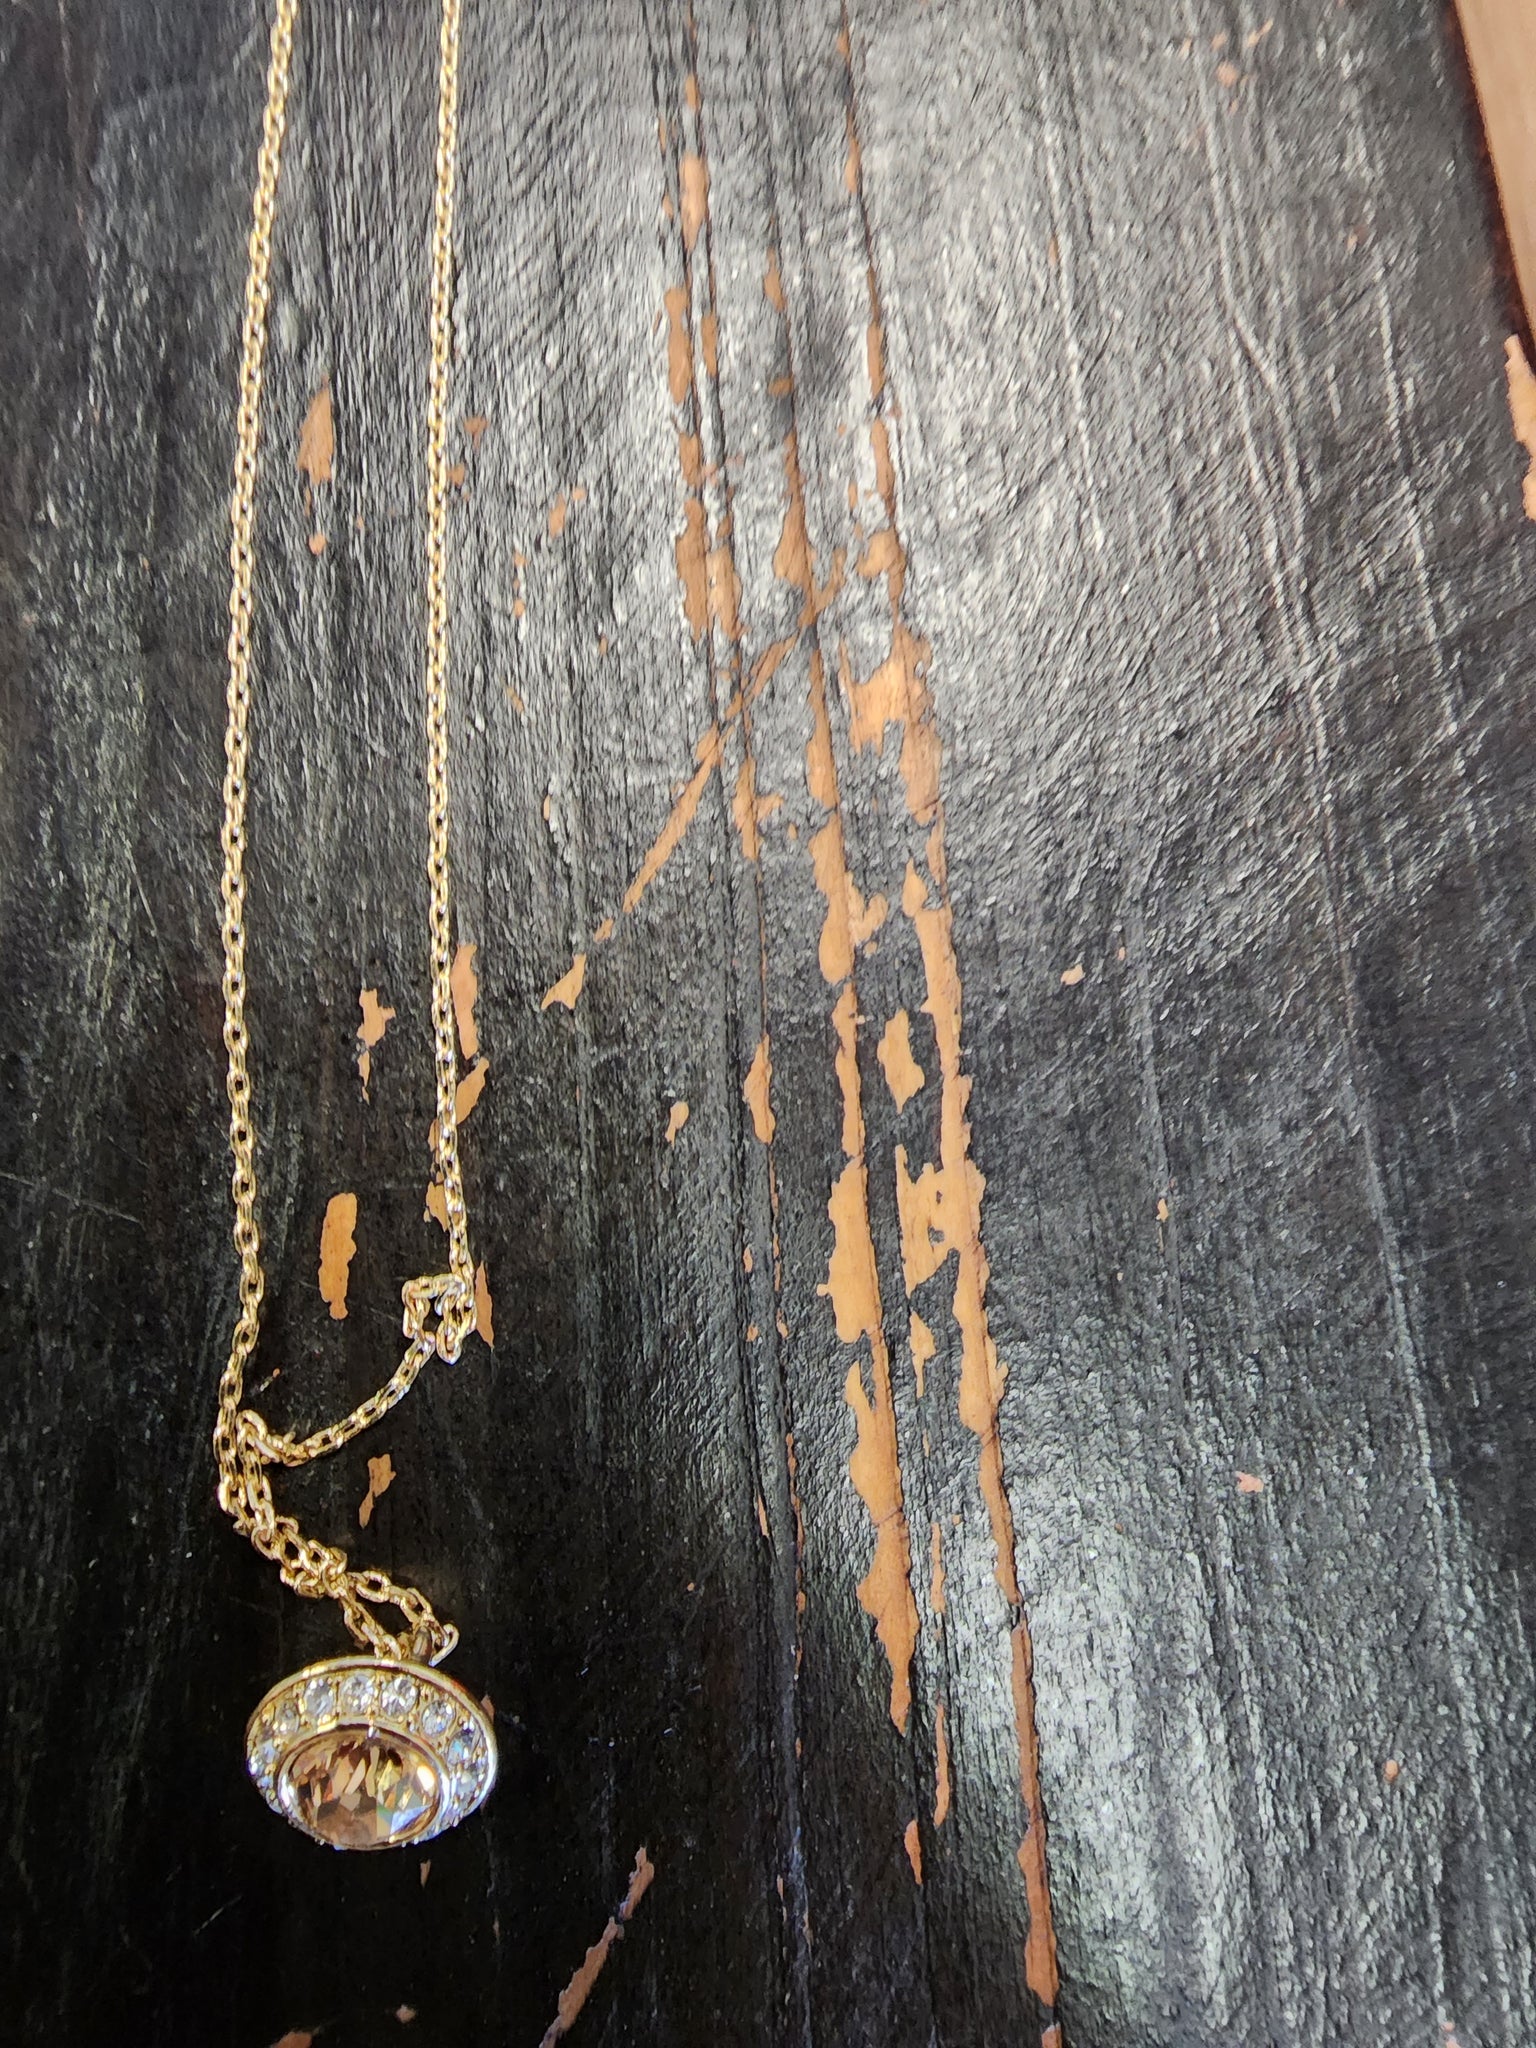 Swarovski crystal necklaces